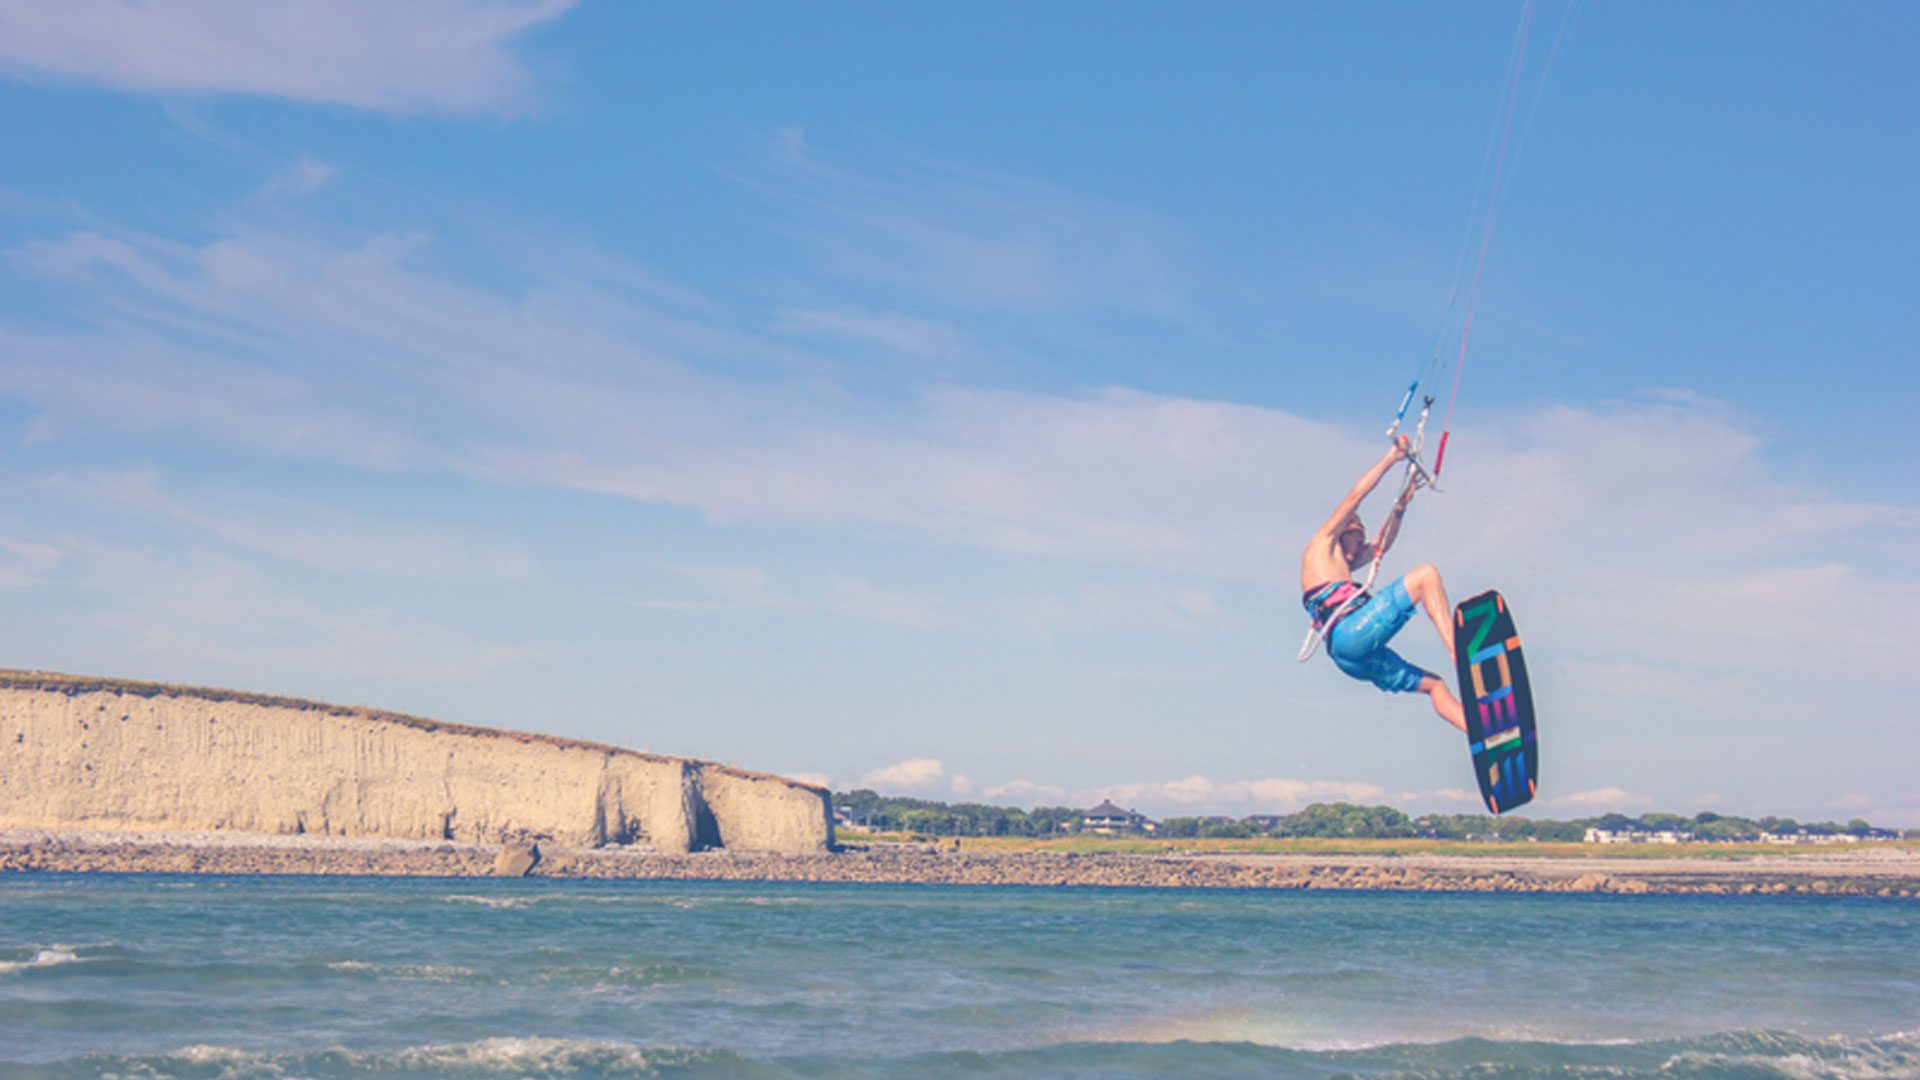 Kitesurfing on the coast of Ireland